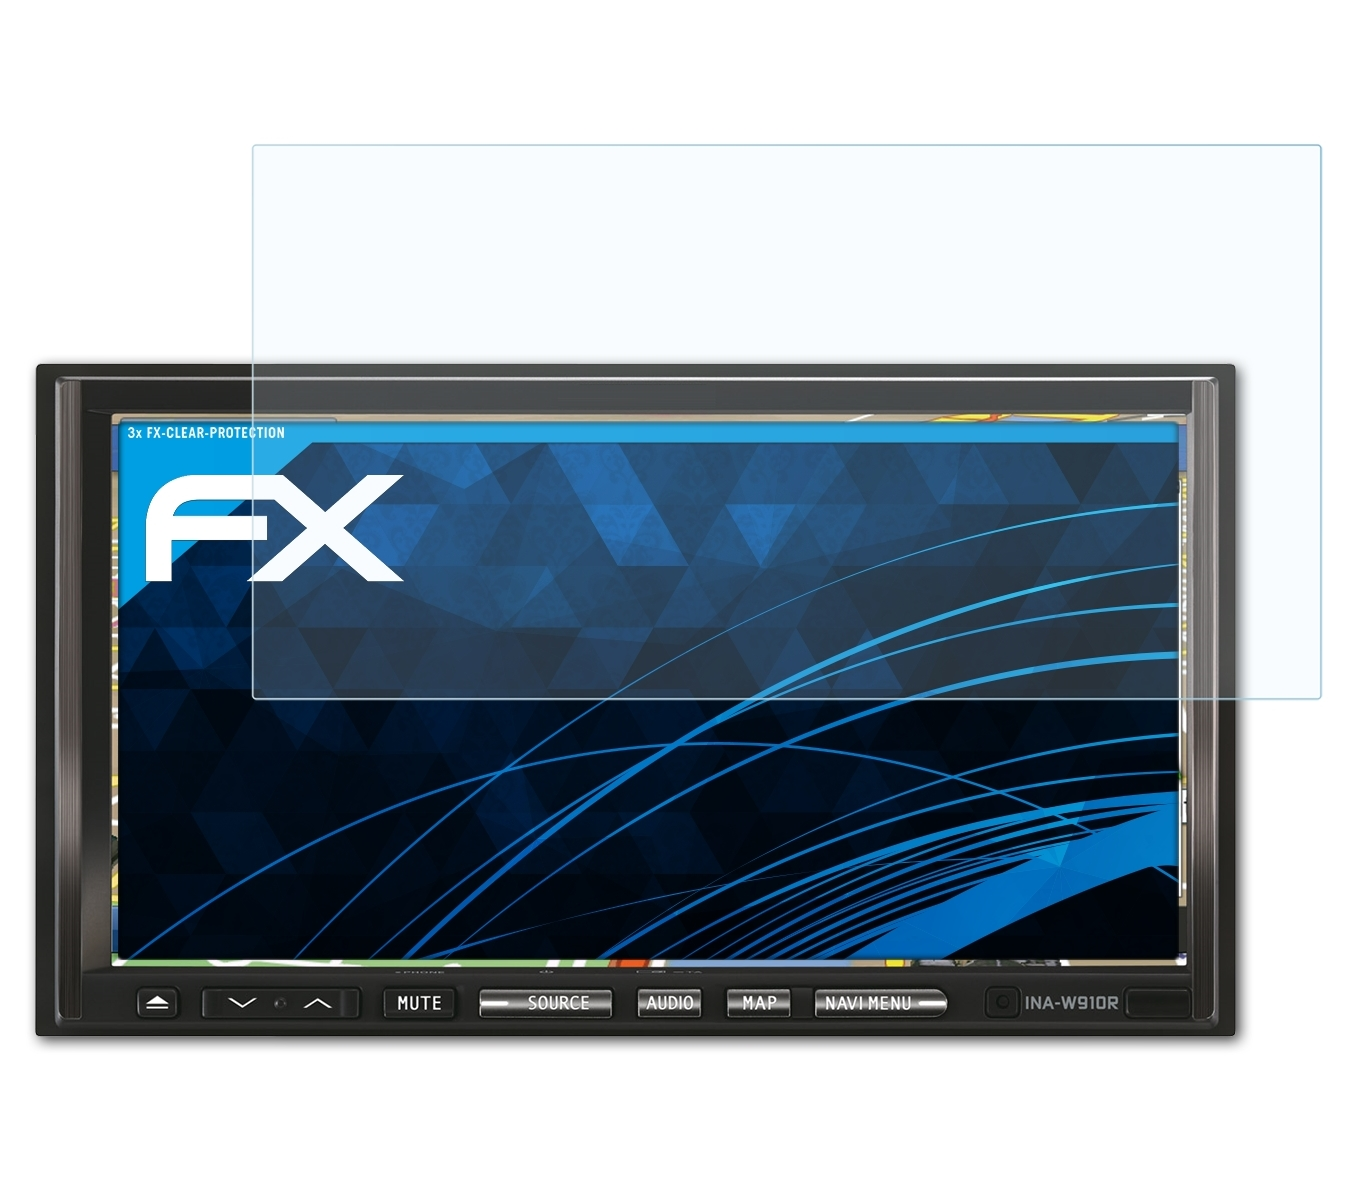 ATFOLIX FX-Clear Alpine Displayschutz(für INA-W910R) 3x